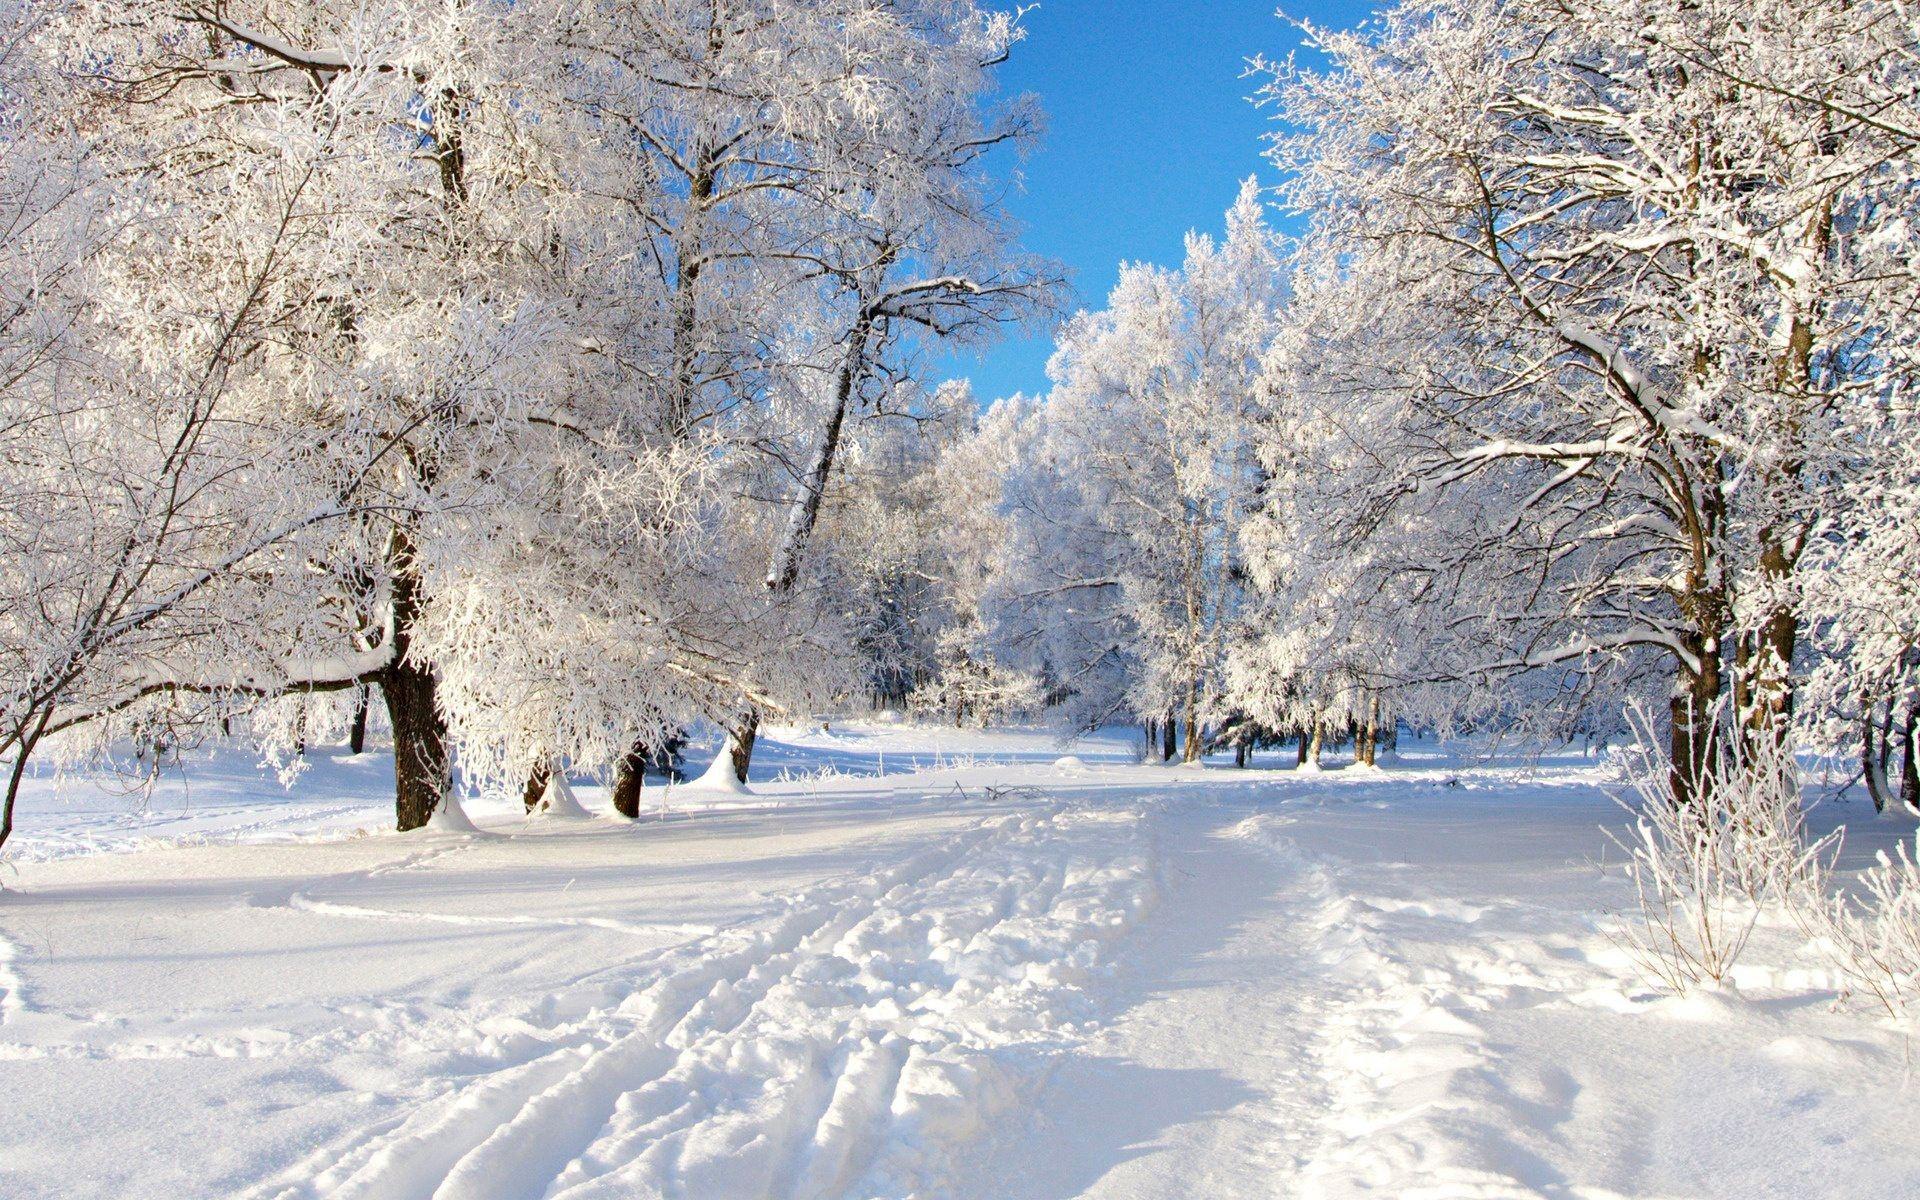 Обои Природа Зима, обои для рабочего стола, фотографии природа, зима, снег,  ели Обои для рабочего стола, скачать обои картинки заставки на рабочий стол.